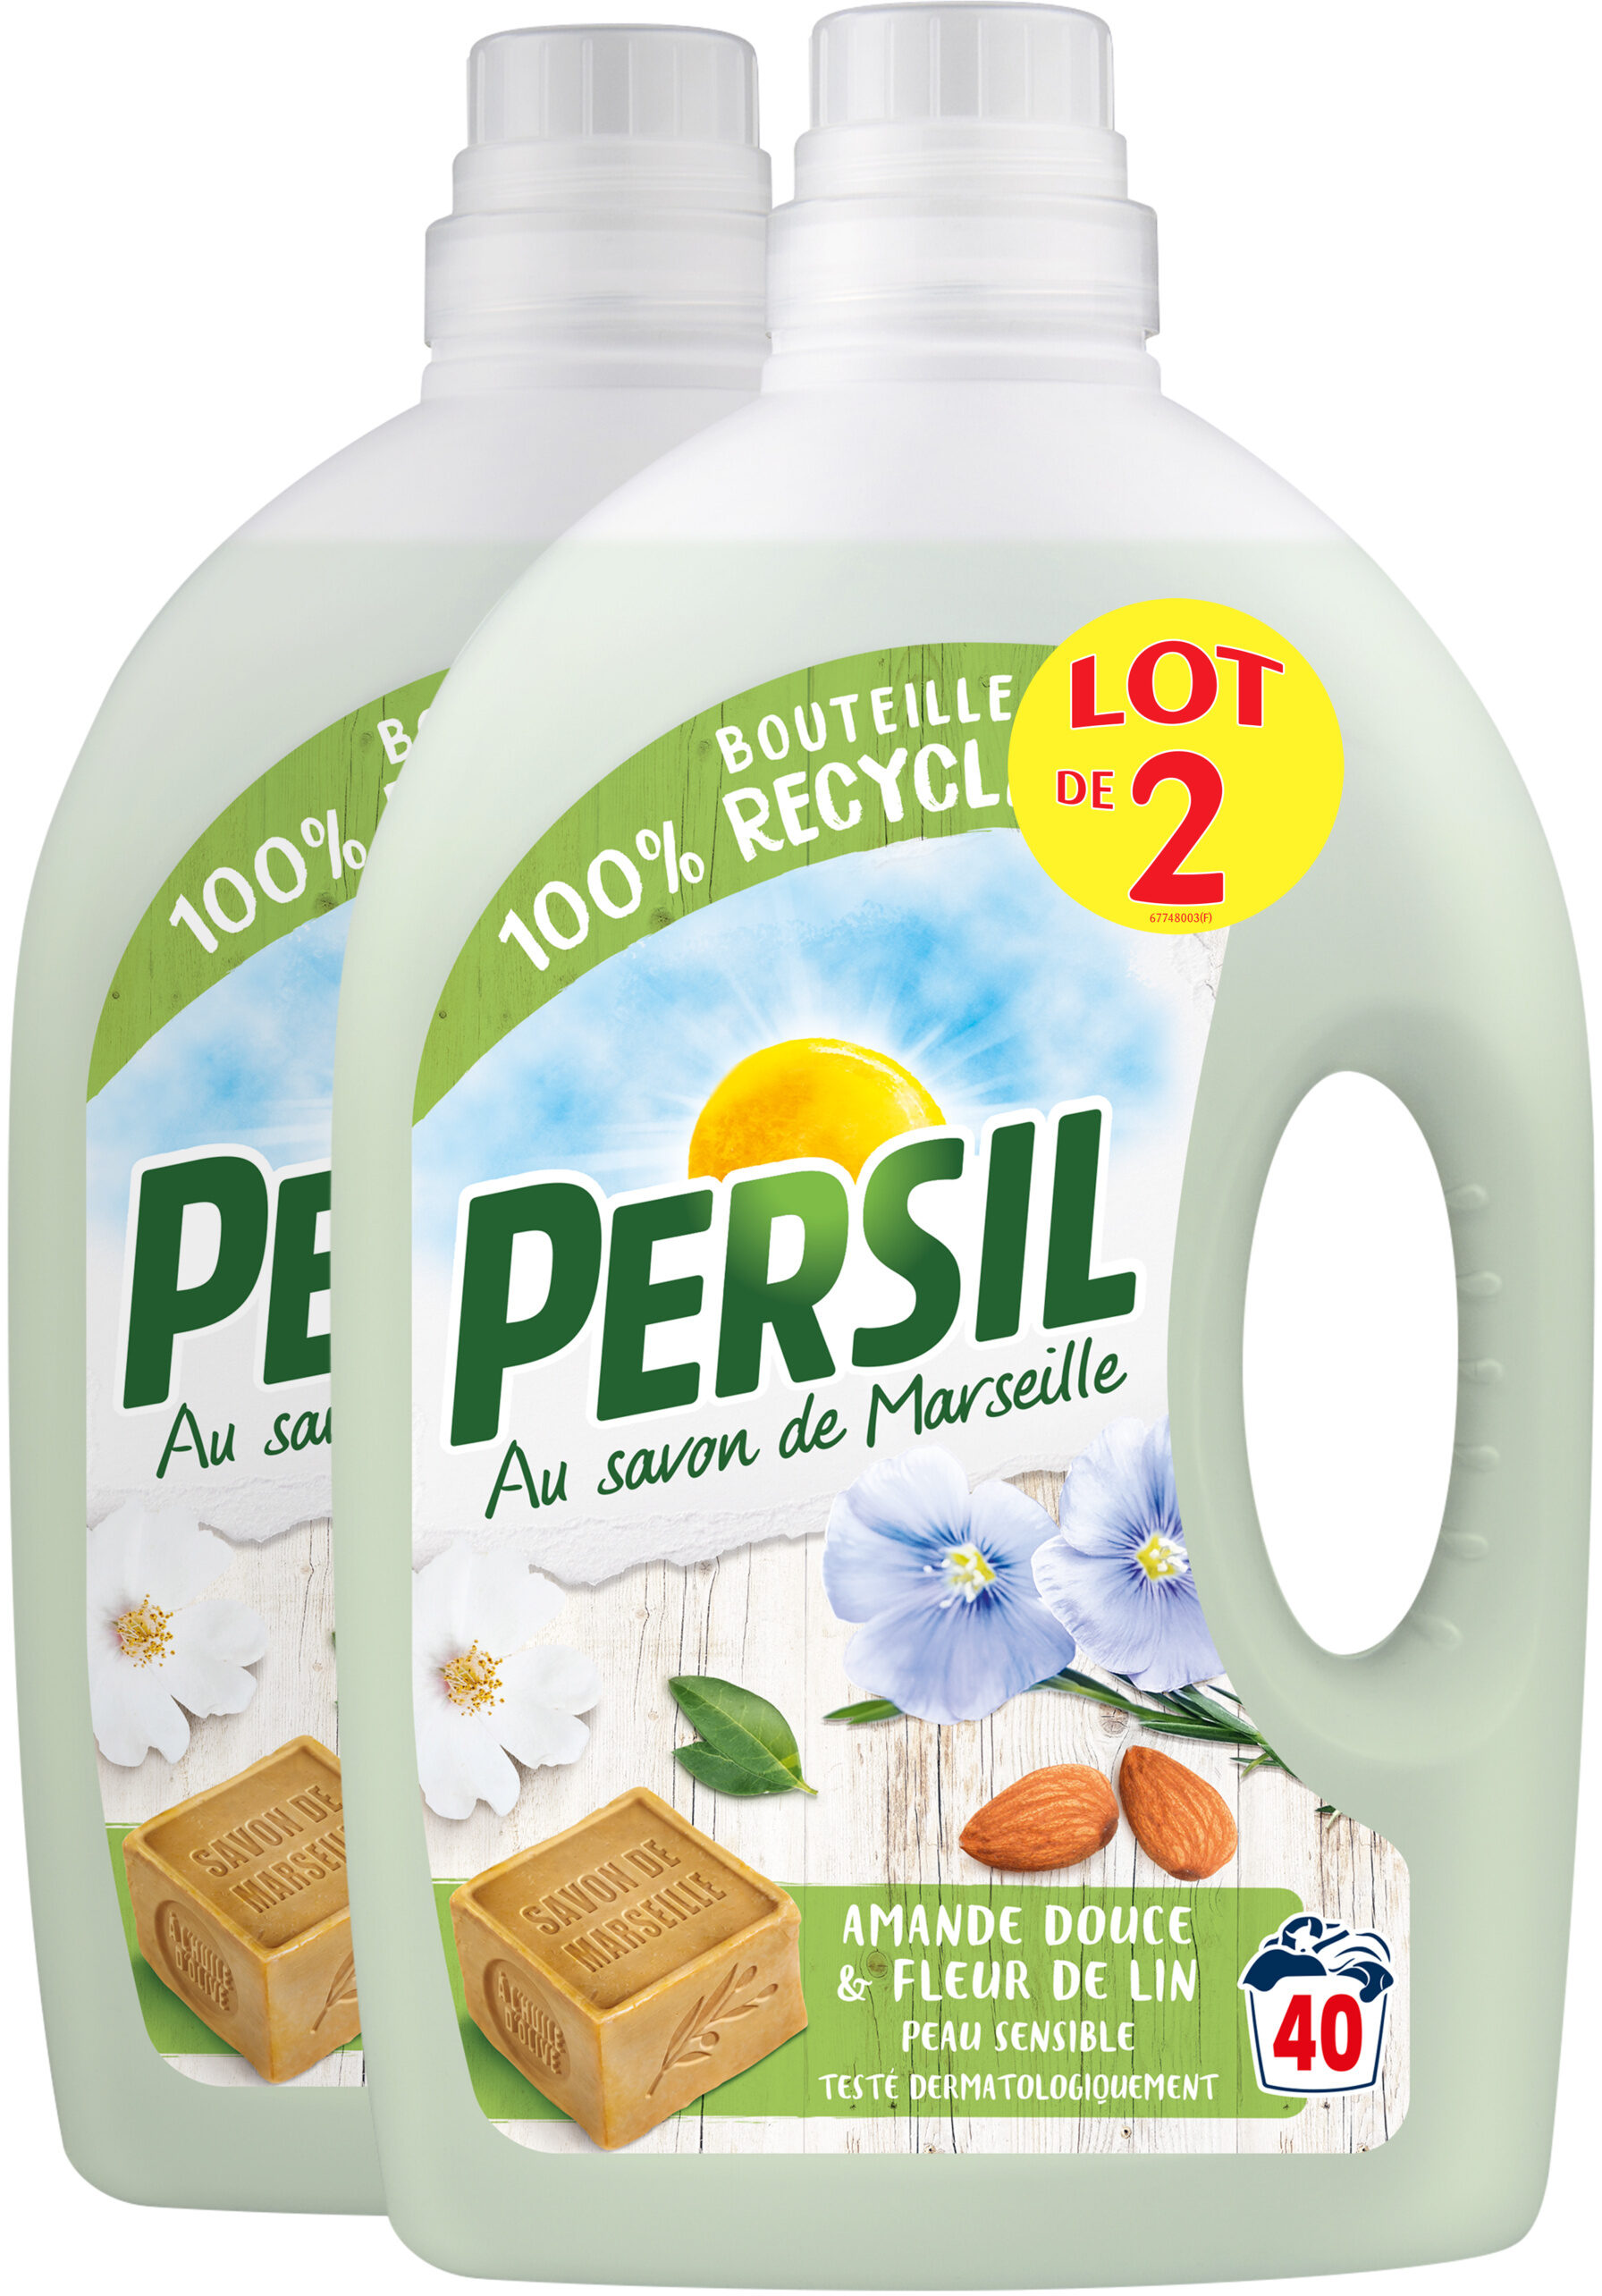 Persil Lessive Liquide Amande Douce 2l 40 Lavages Lot de 2 - Product - fr